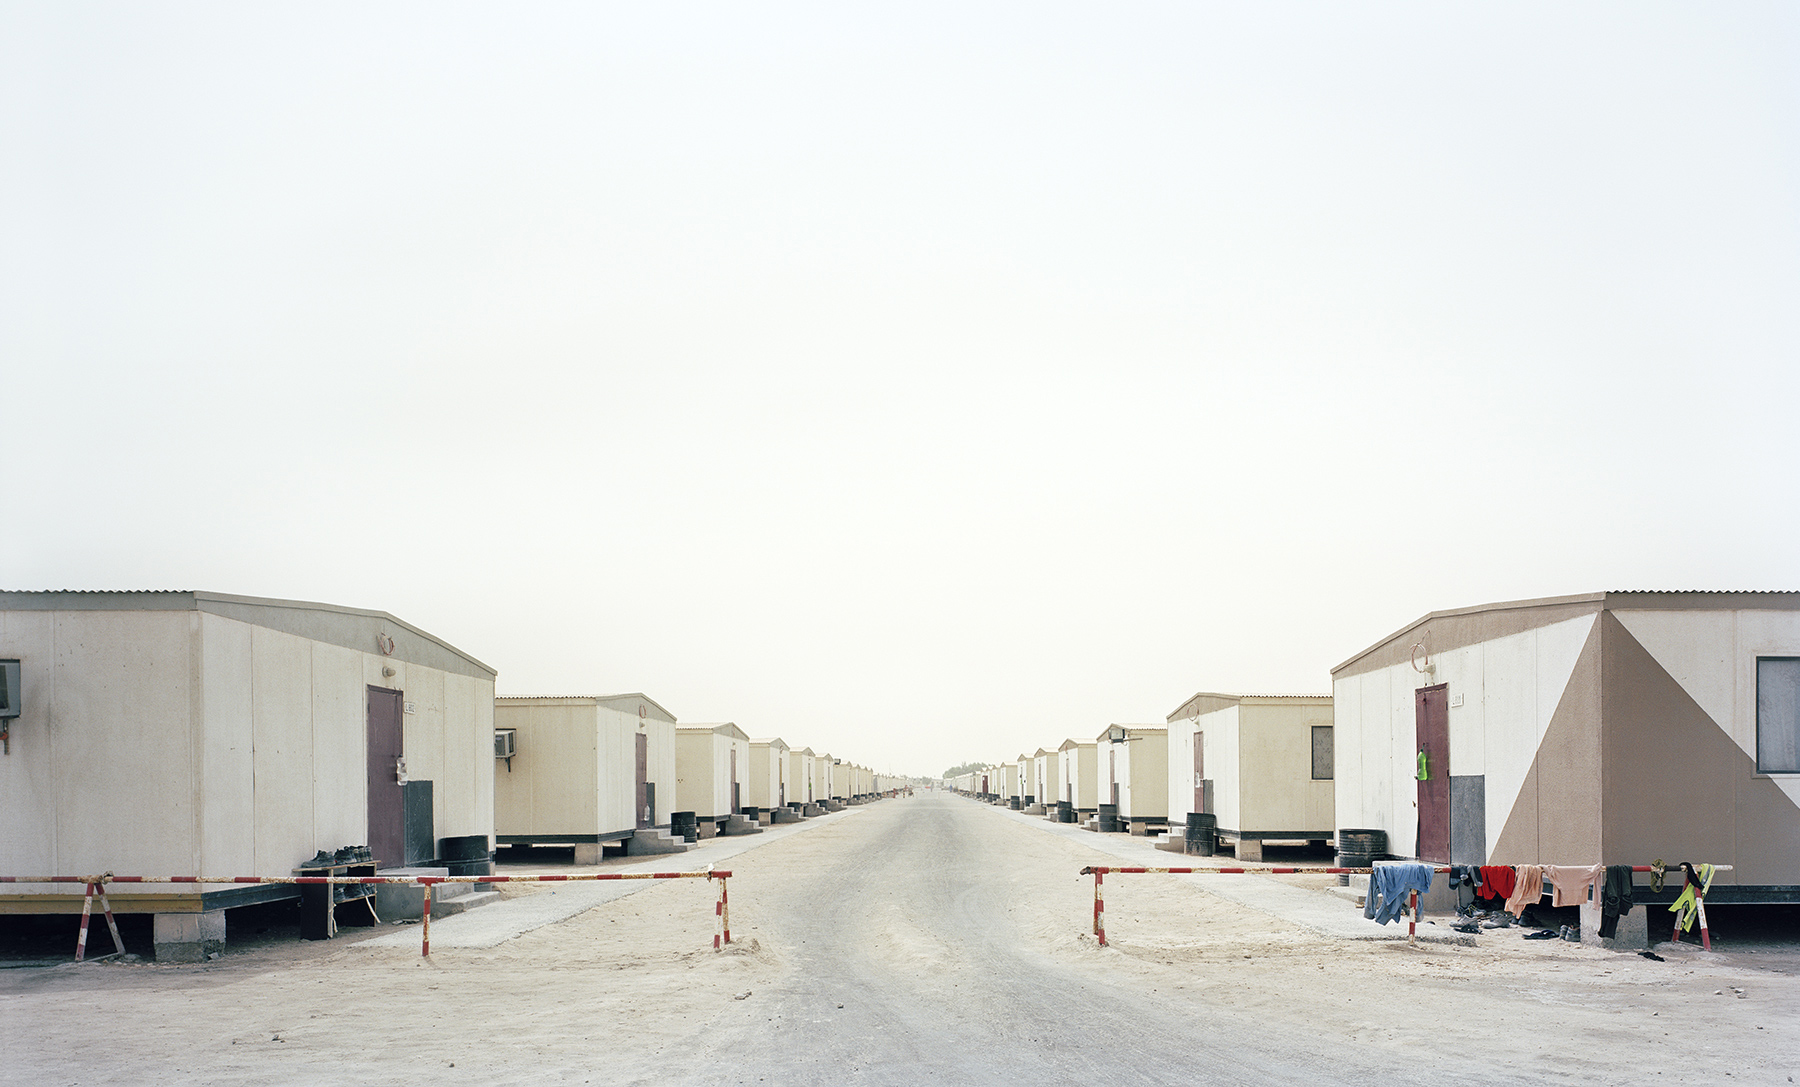  Camp I, Ras Laffan, Qatar, 2010  